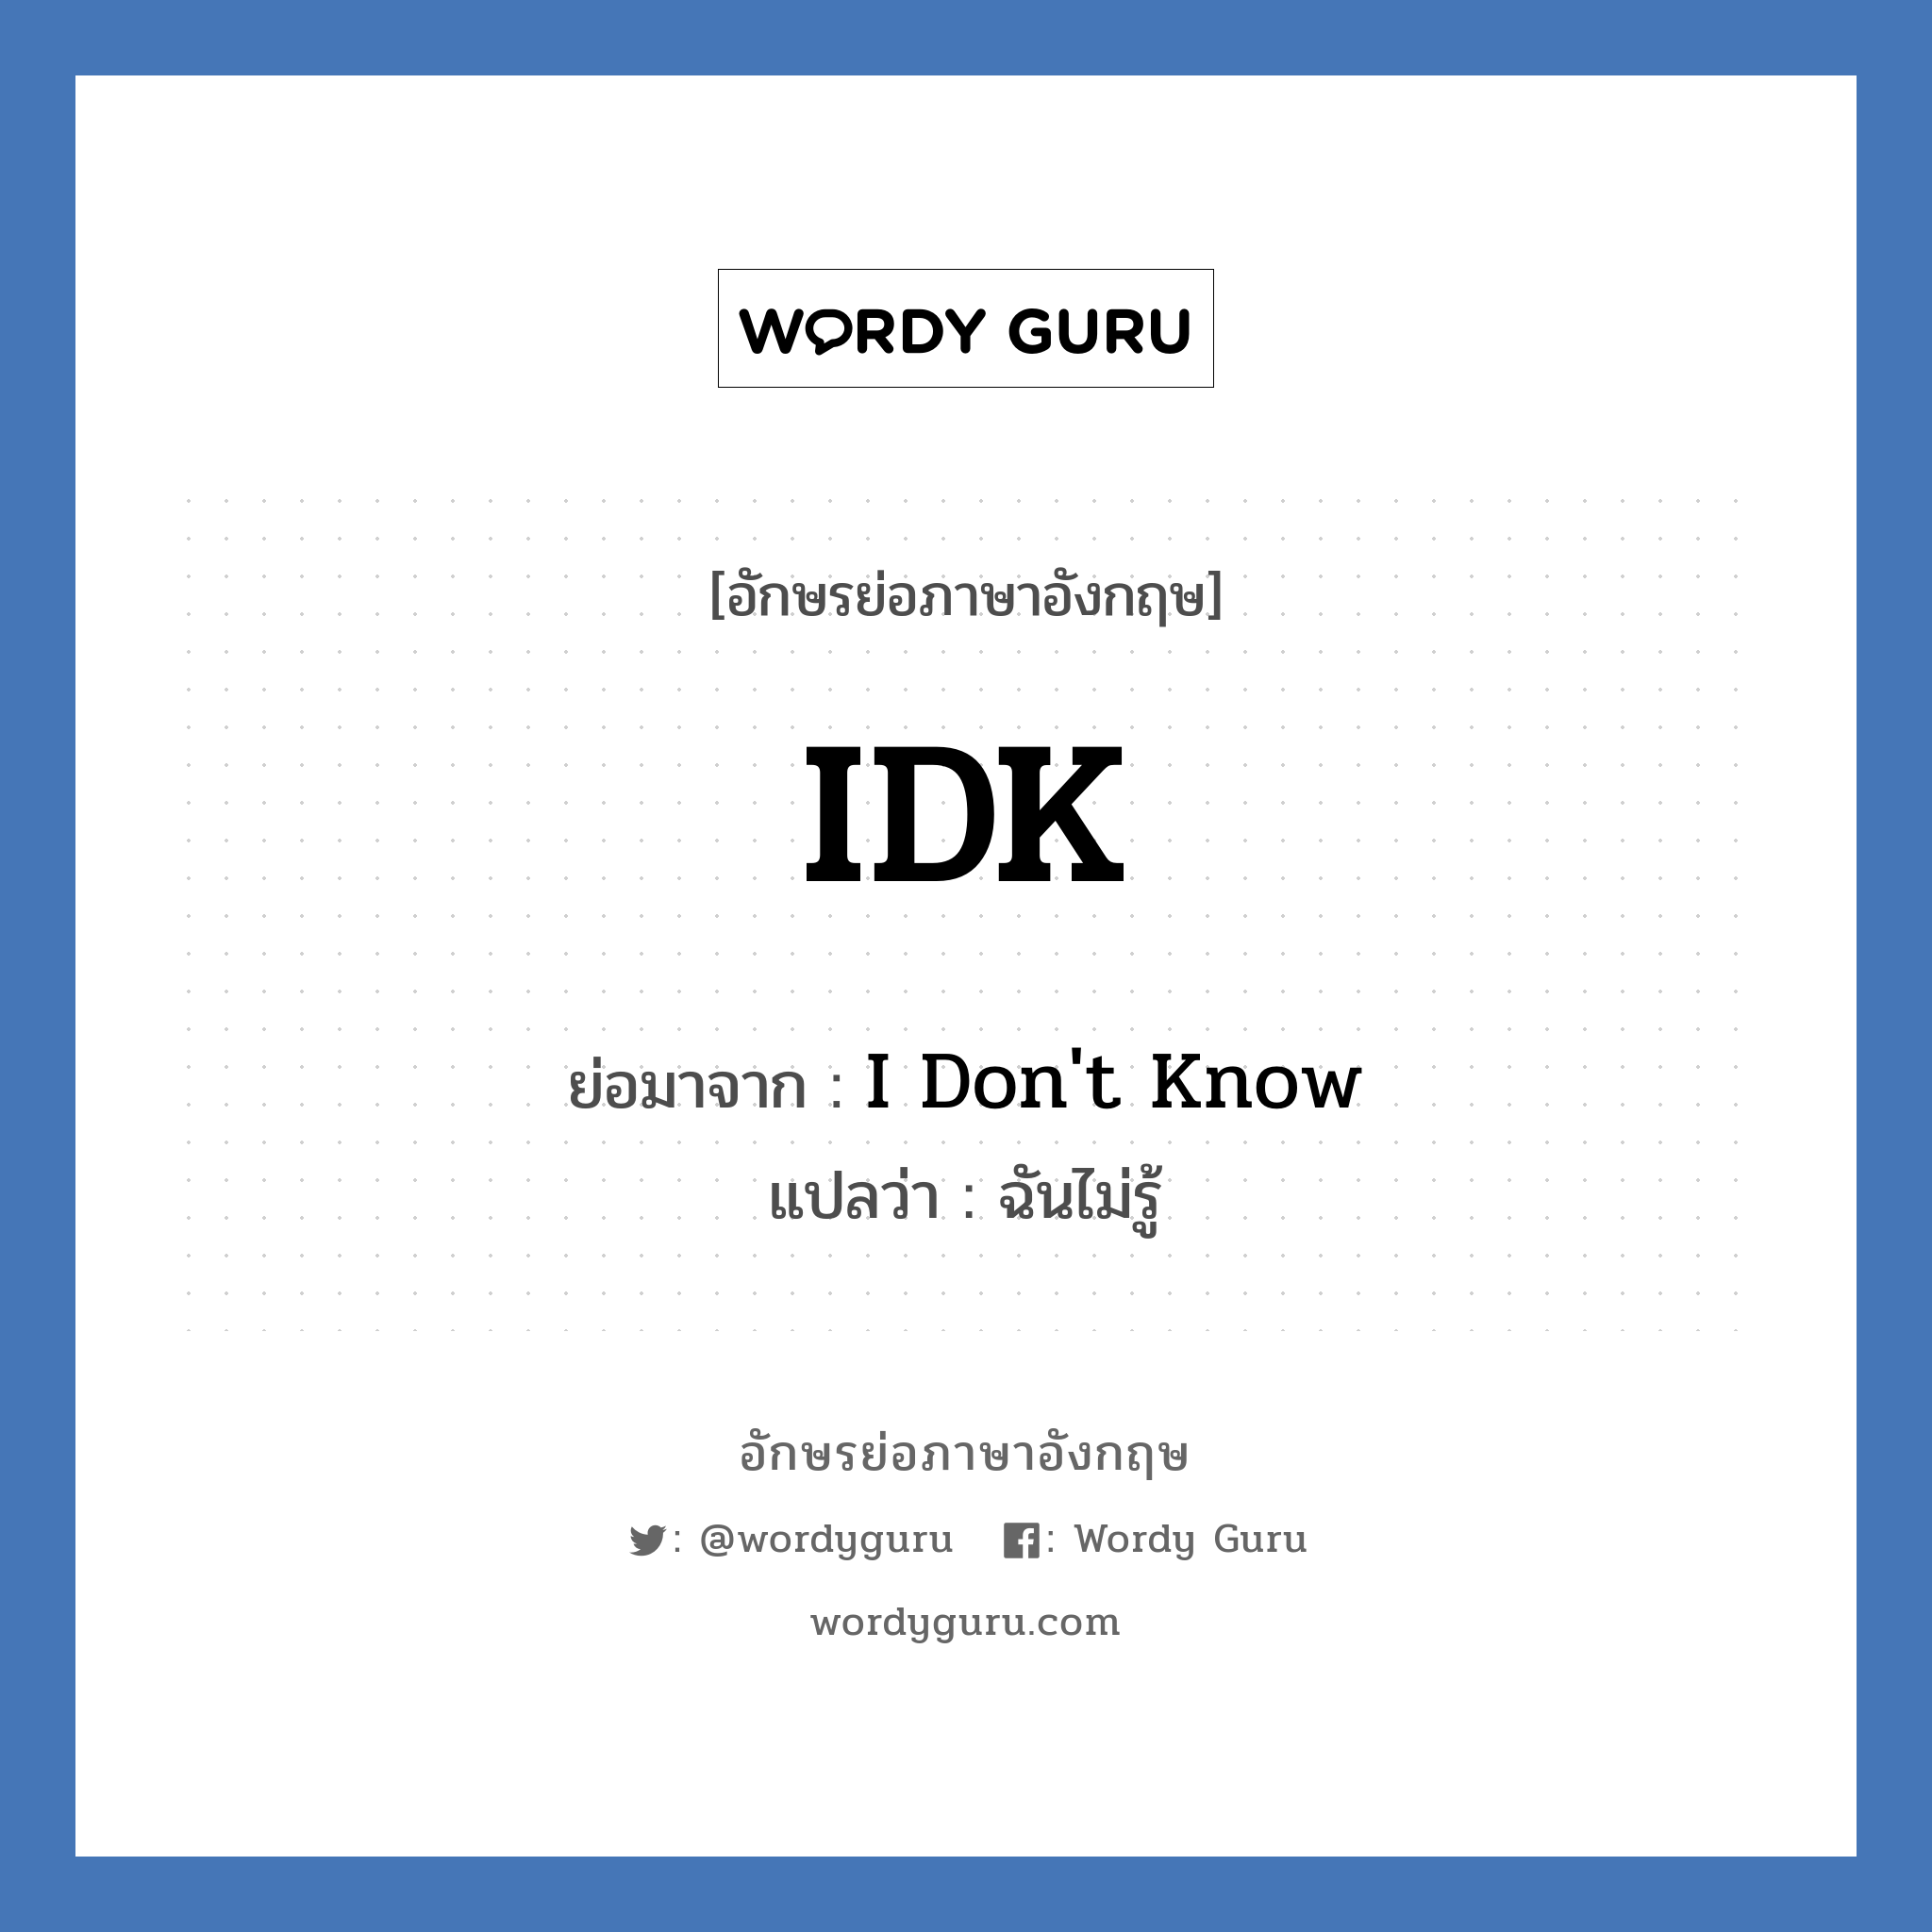 IDK ย่อมาจาก? แปลว่า?, อักษรย่อภาษาอังกฤษ IDK ย่อมาจาก I Don't Know แปลว่า ฉันไม่รู้